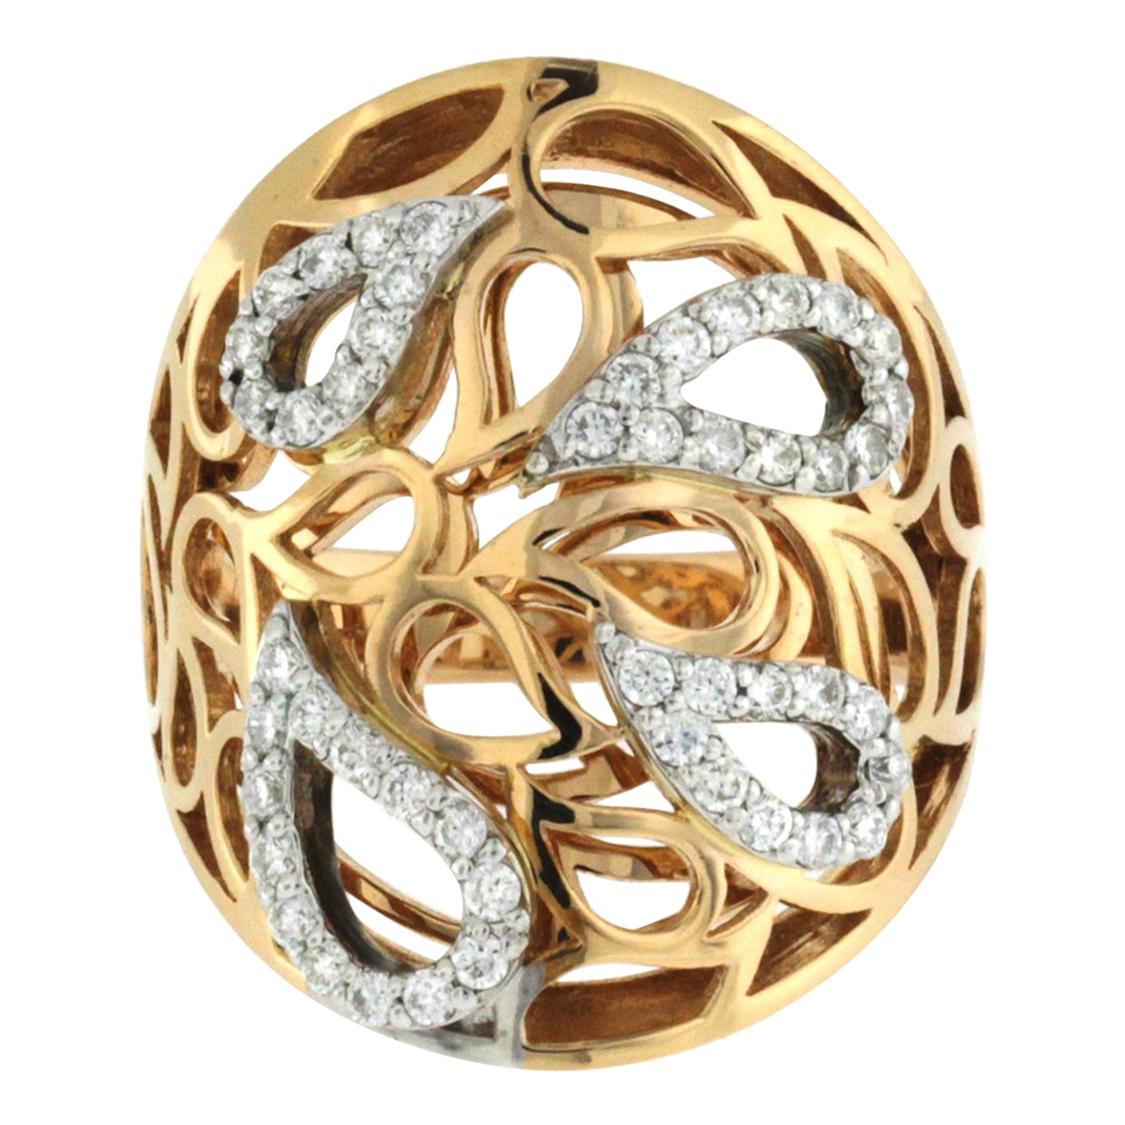 Fancy 0.75 Carat Diamonds in 18 Karat Rose Gold Teardrop Band Ring